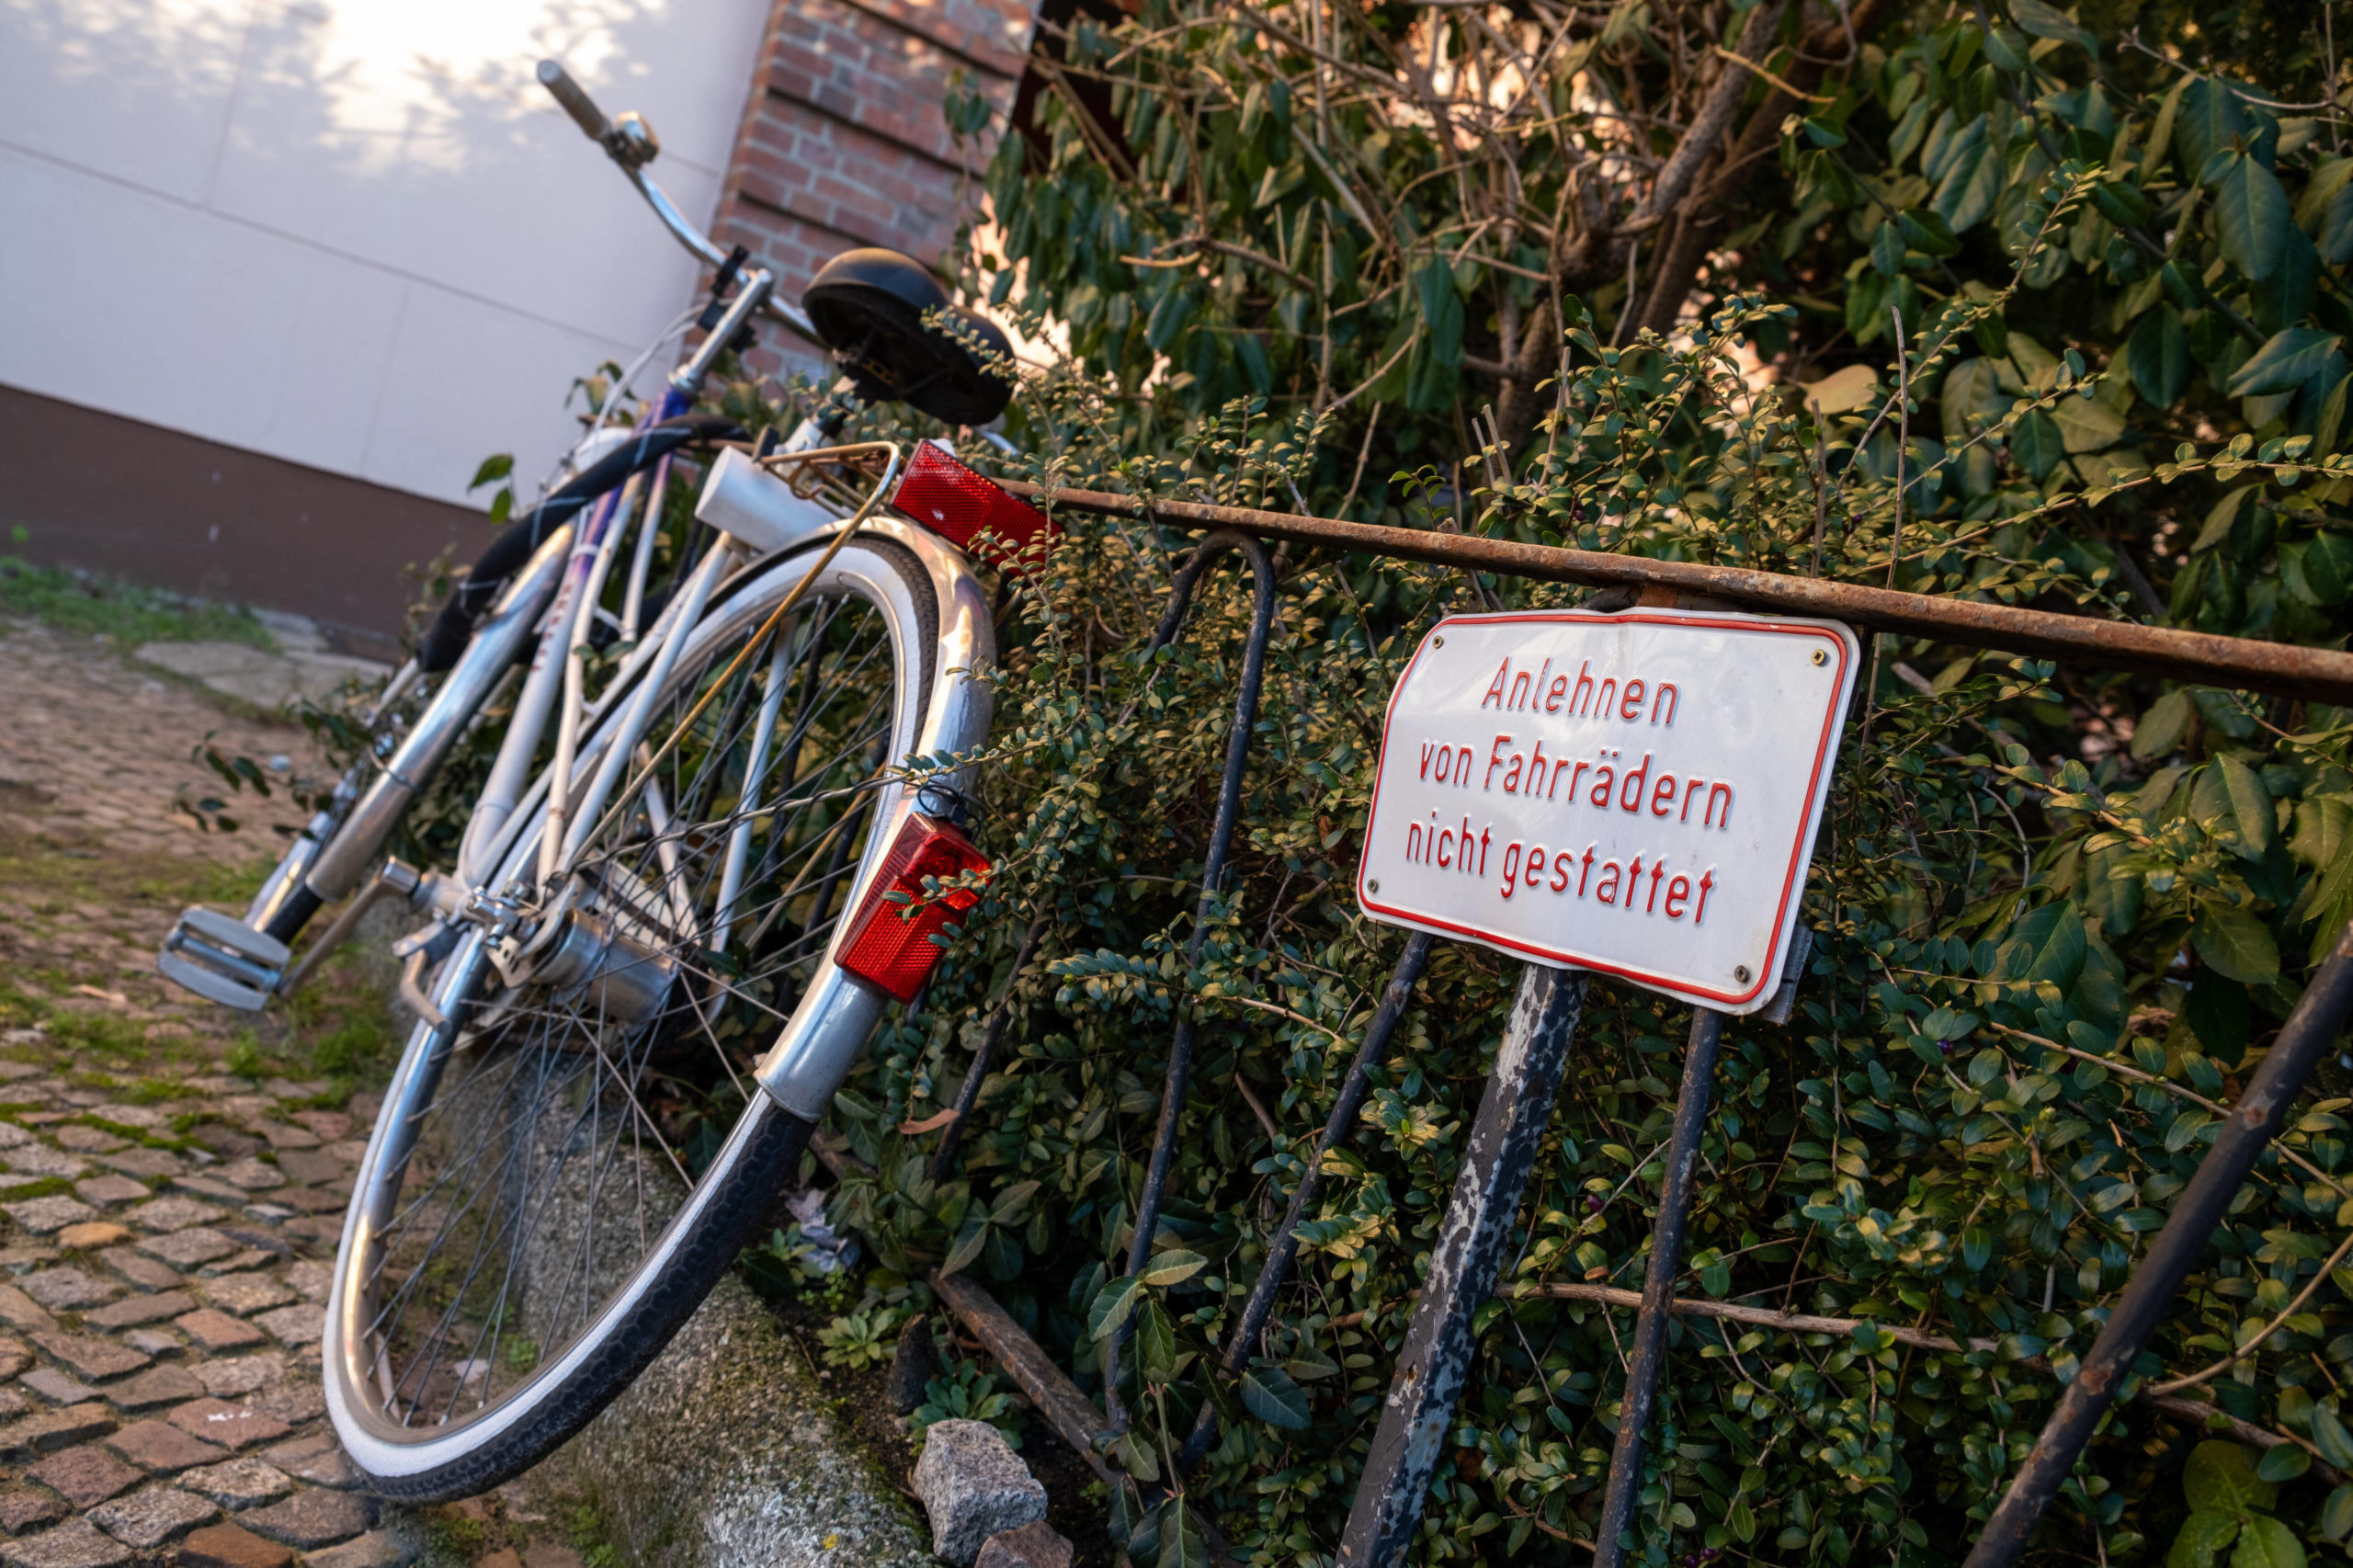 Hinweisschild an einem Zaun in Prenzlauer Berg: Fahrräder anlehnen nicht gestattet. Foto: Imago/Seeliger